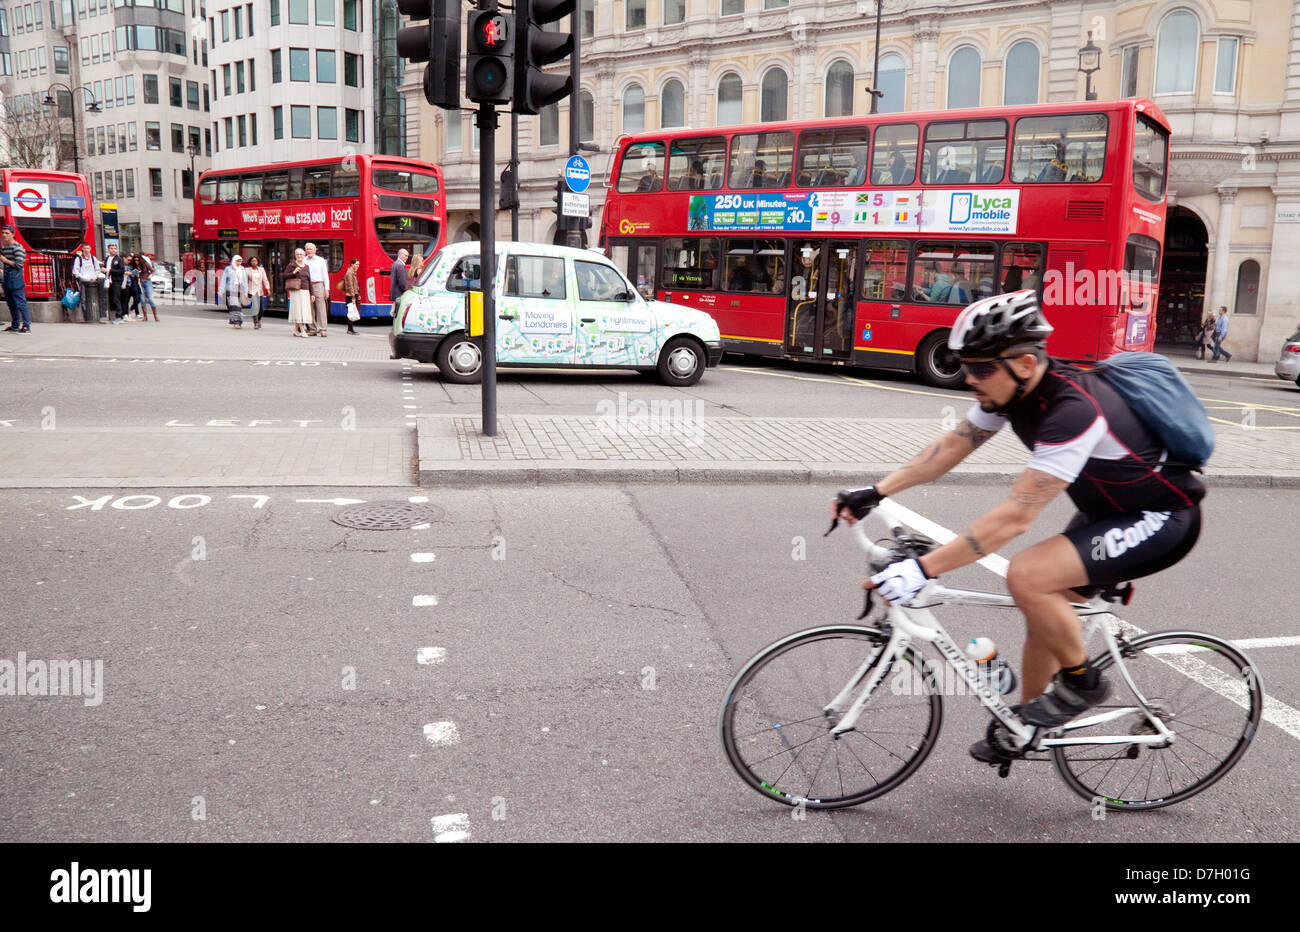 Fahrradstraßenszene in London - Ein Radfahrer, der auf dem Trafalgar Square, im Zentrum von London, England, Fahrrad fährt Stockfoto